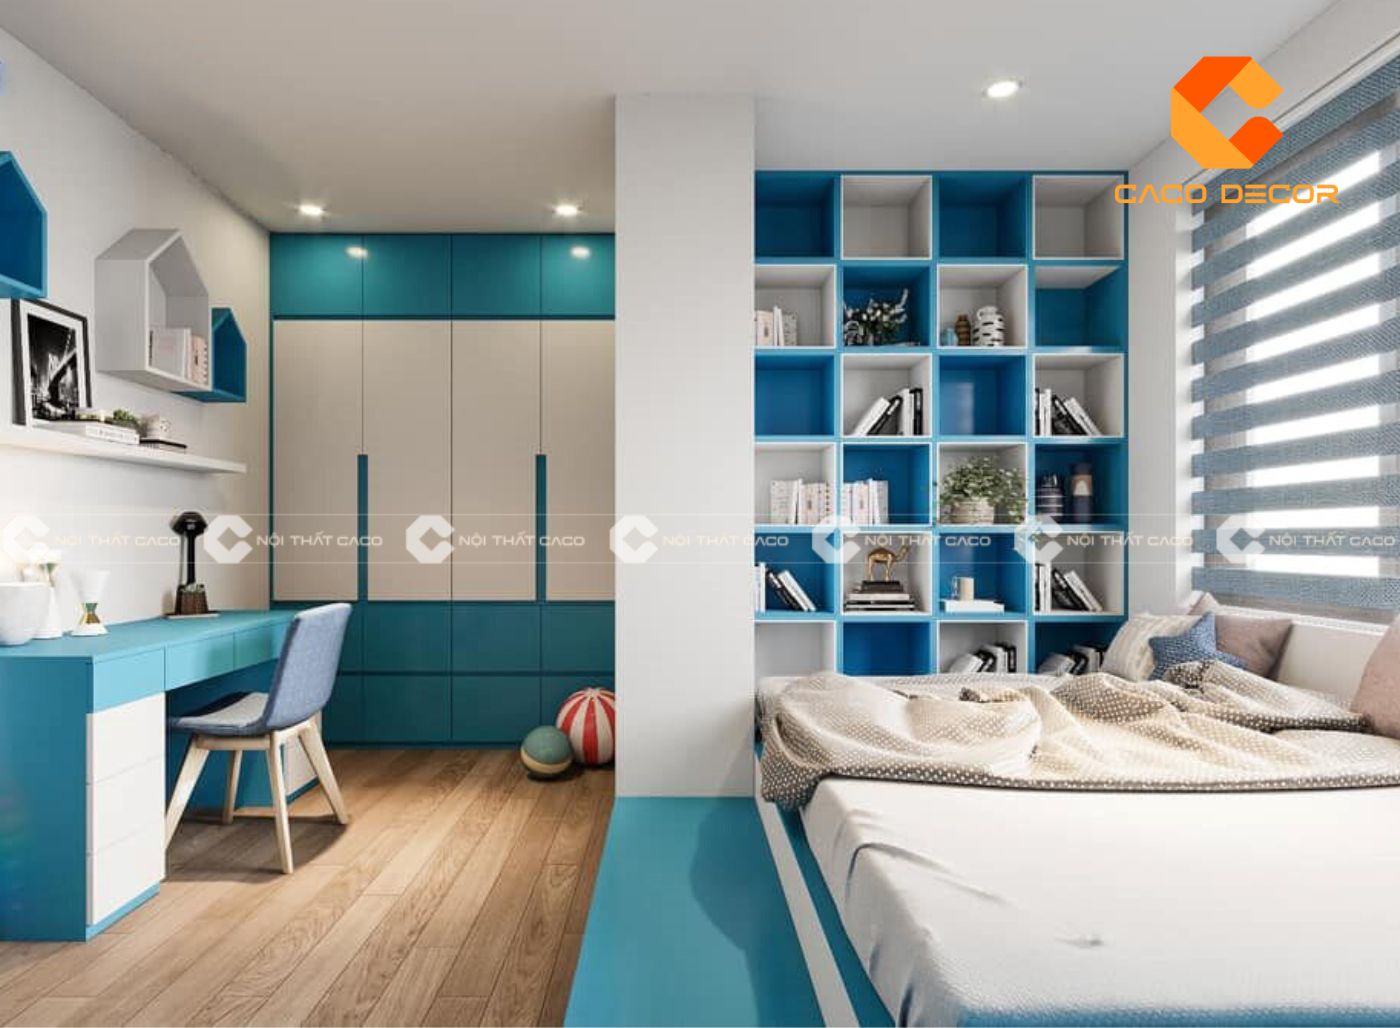 99+ ý tưởng thiết kế phòng ngủ màu xanh dương “cực” đẹp 9